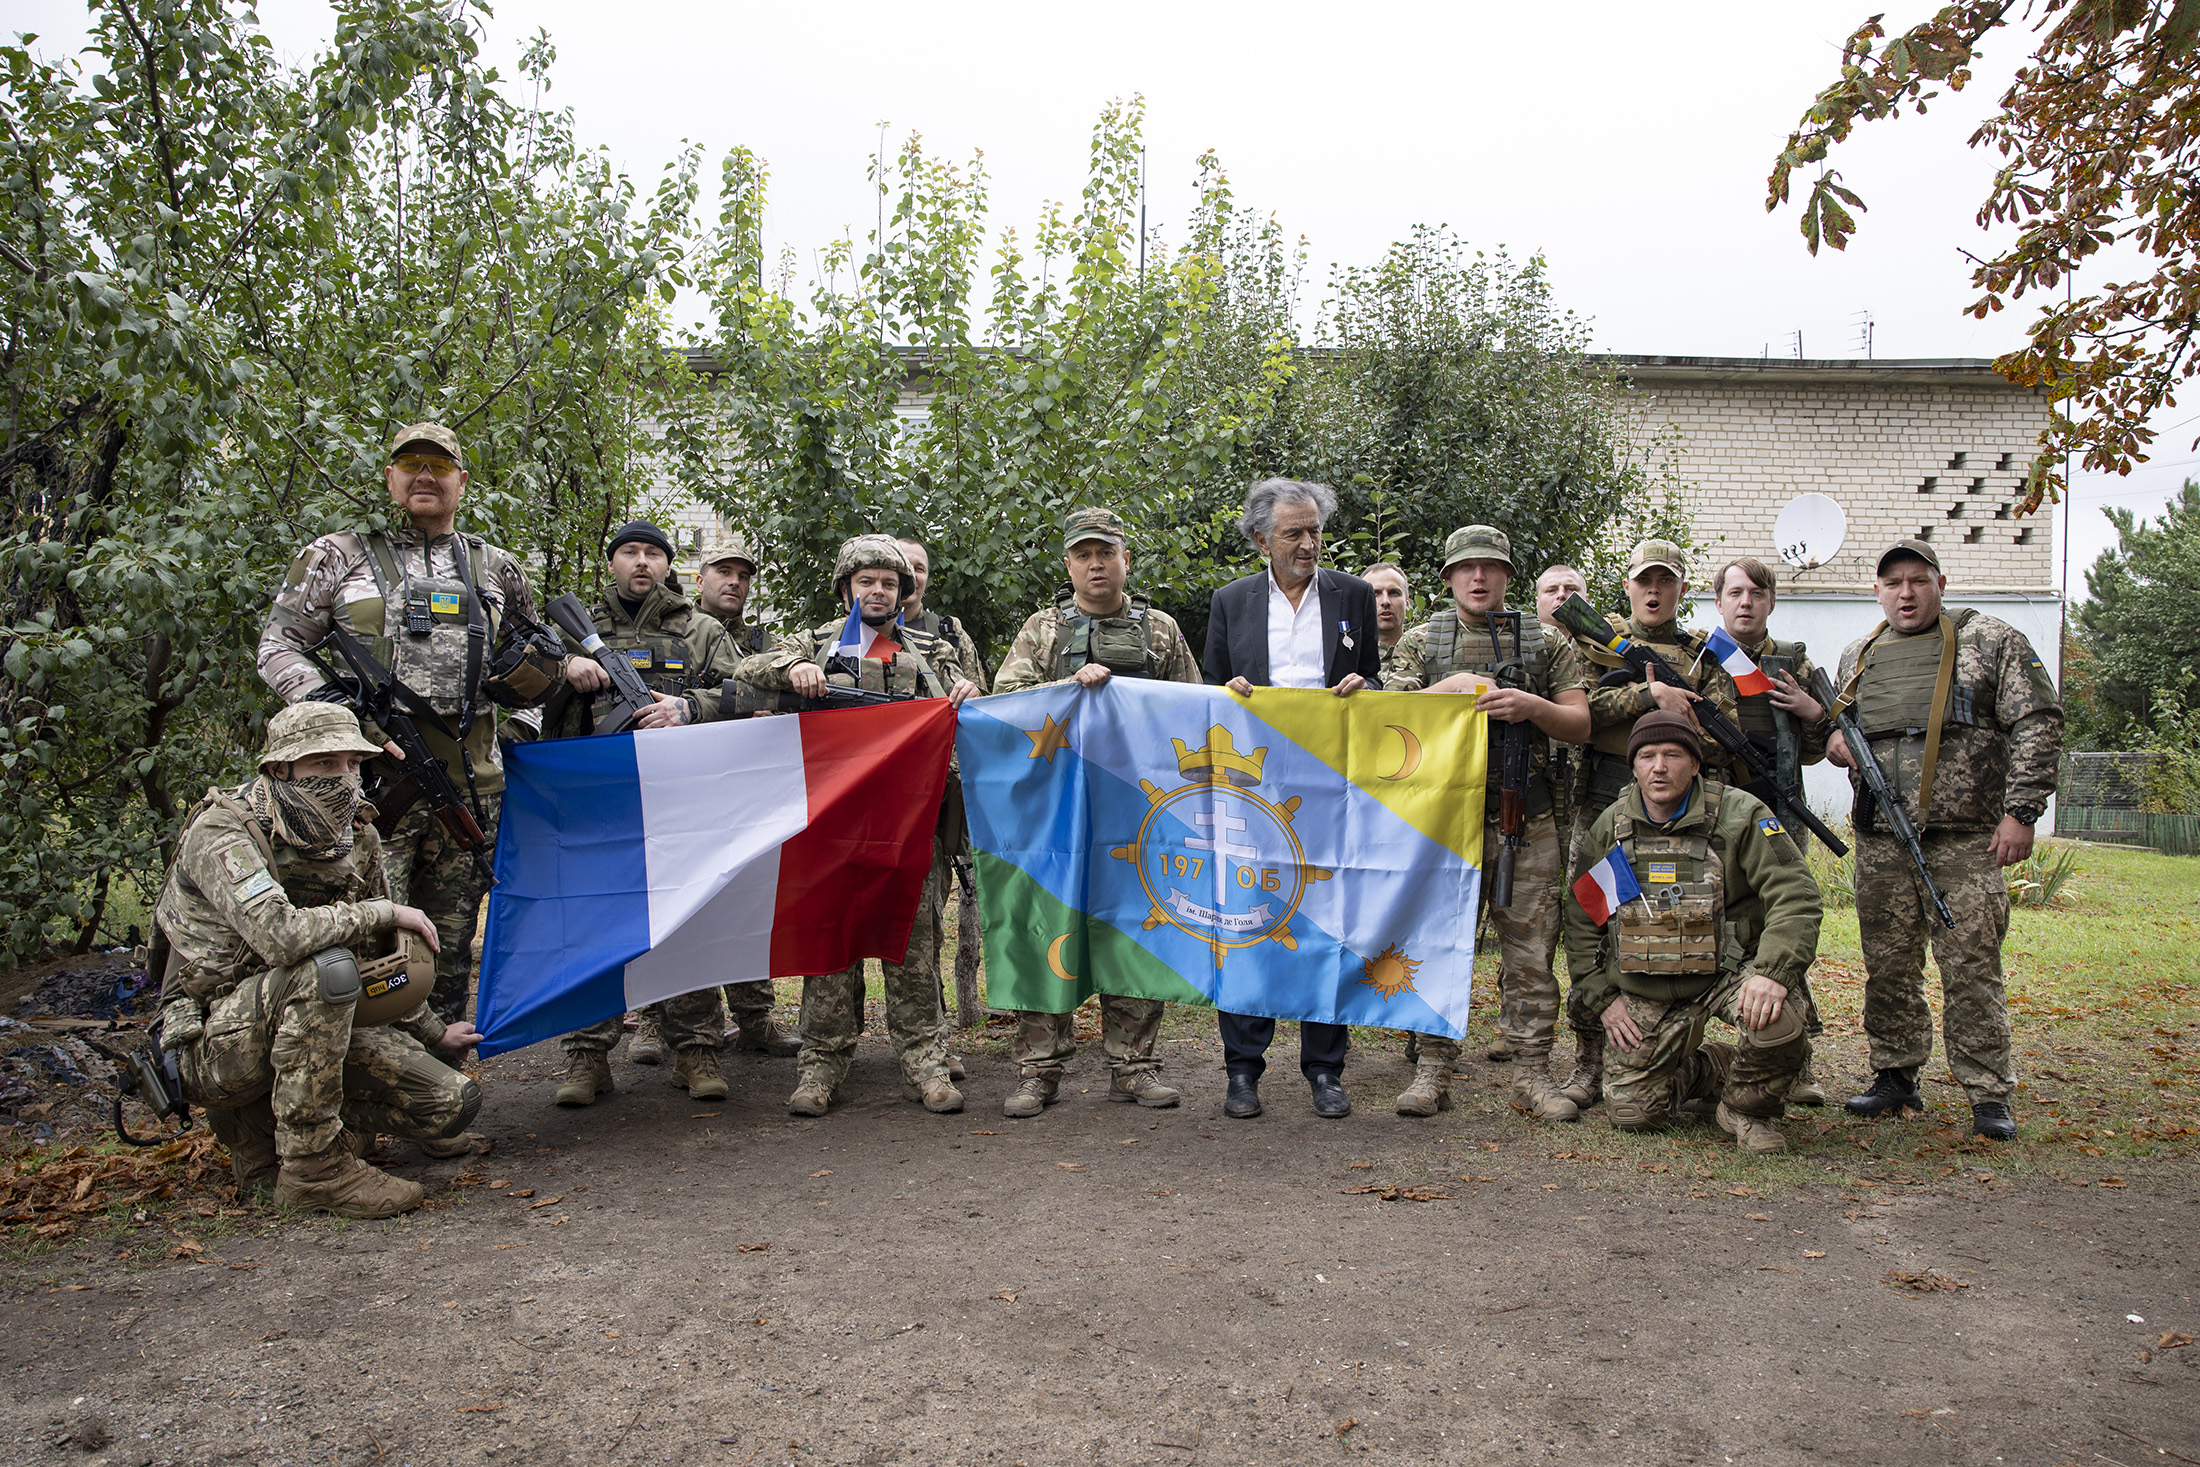 BHL et le Bataillon Charles de Gaulle portent le drapeau du bataillon aux couleurs de l'Ukraine à côté de celui de la France.